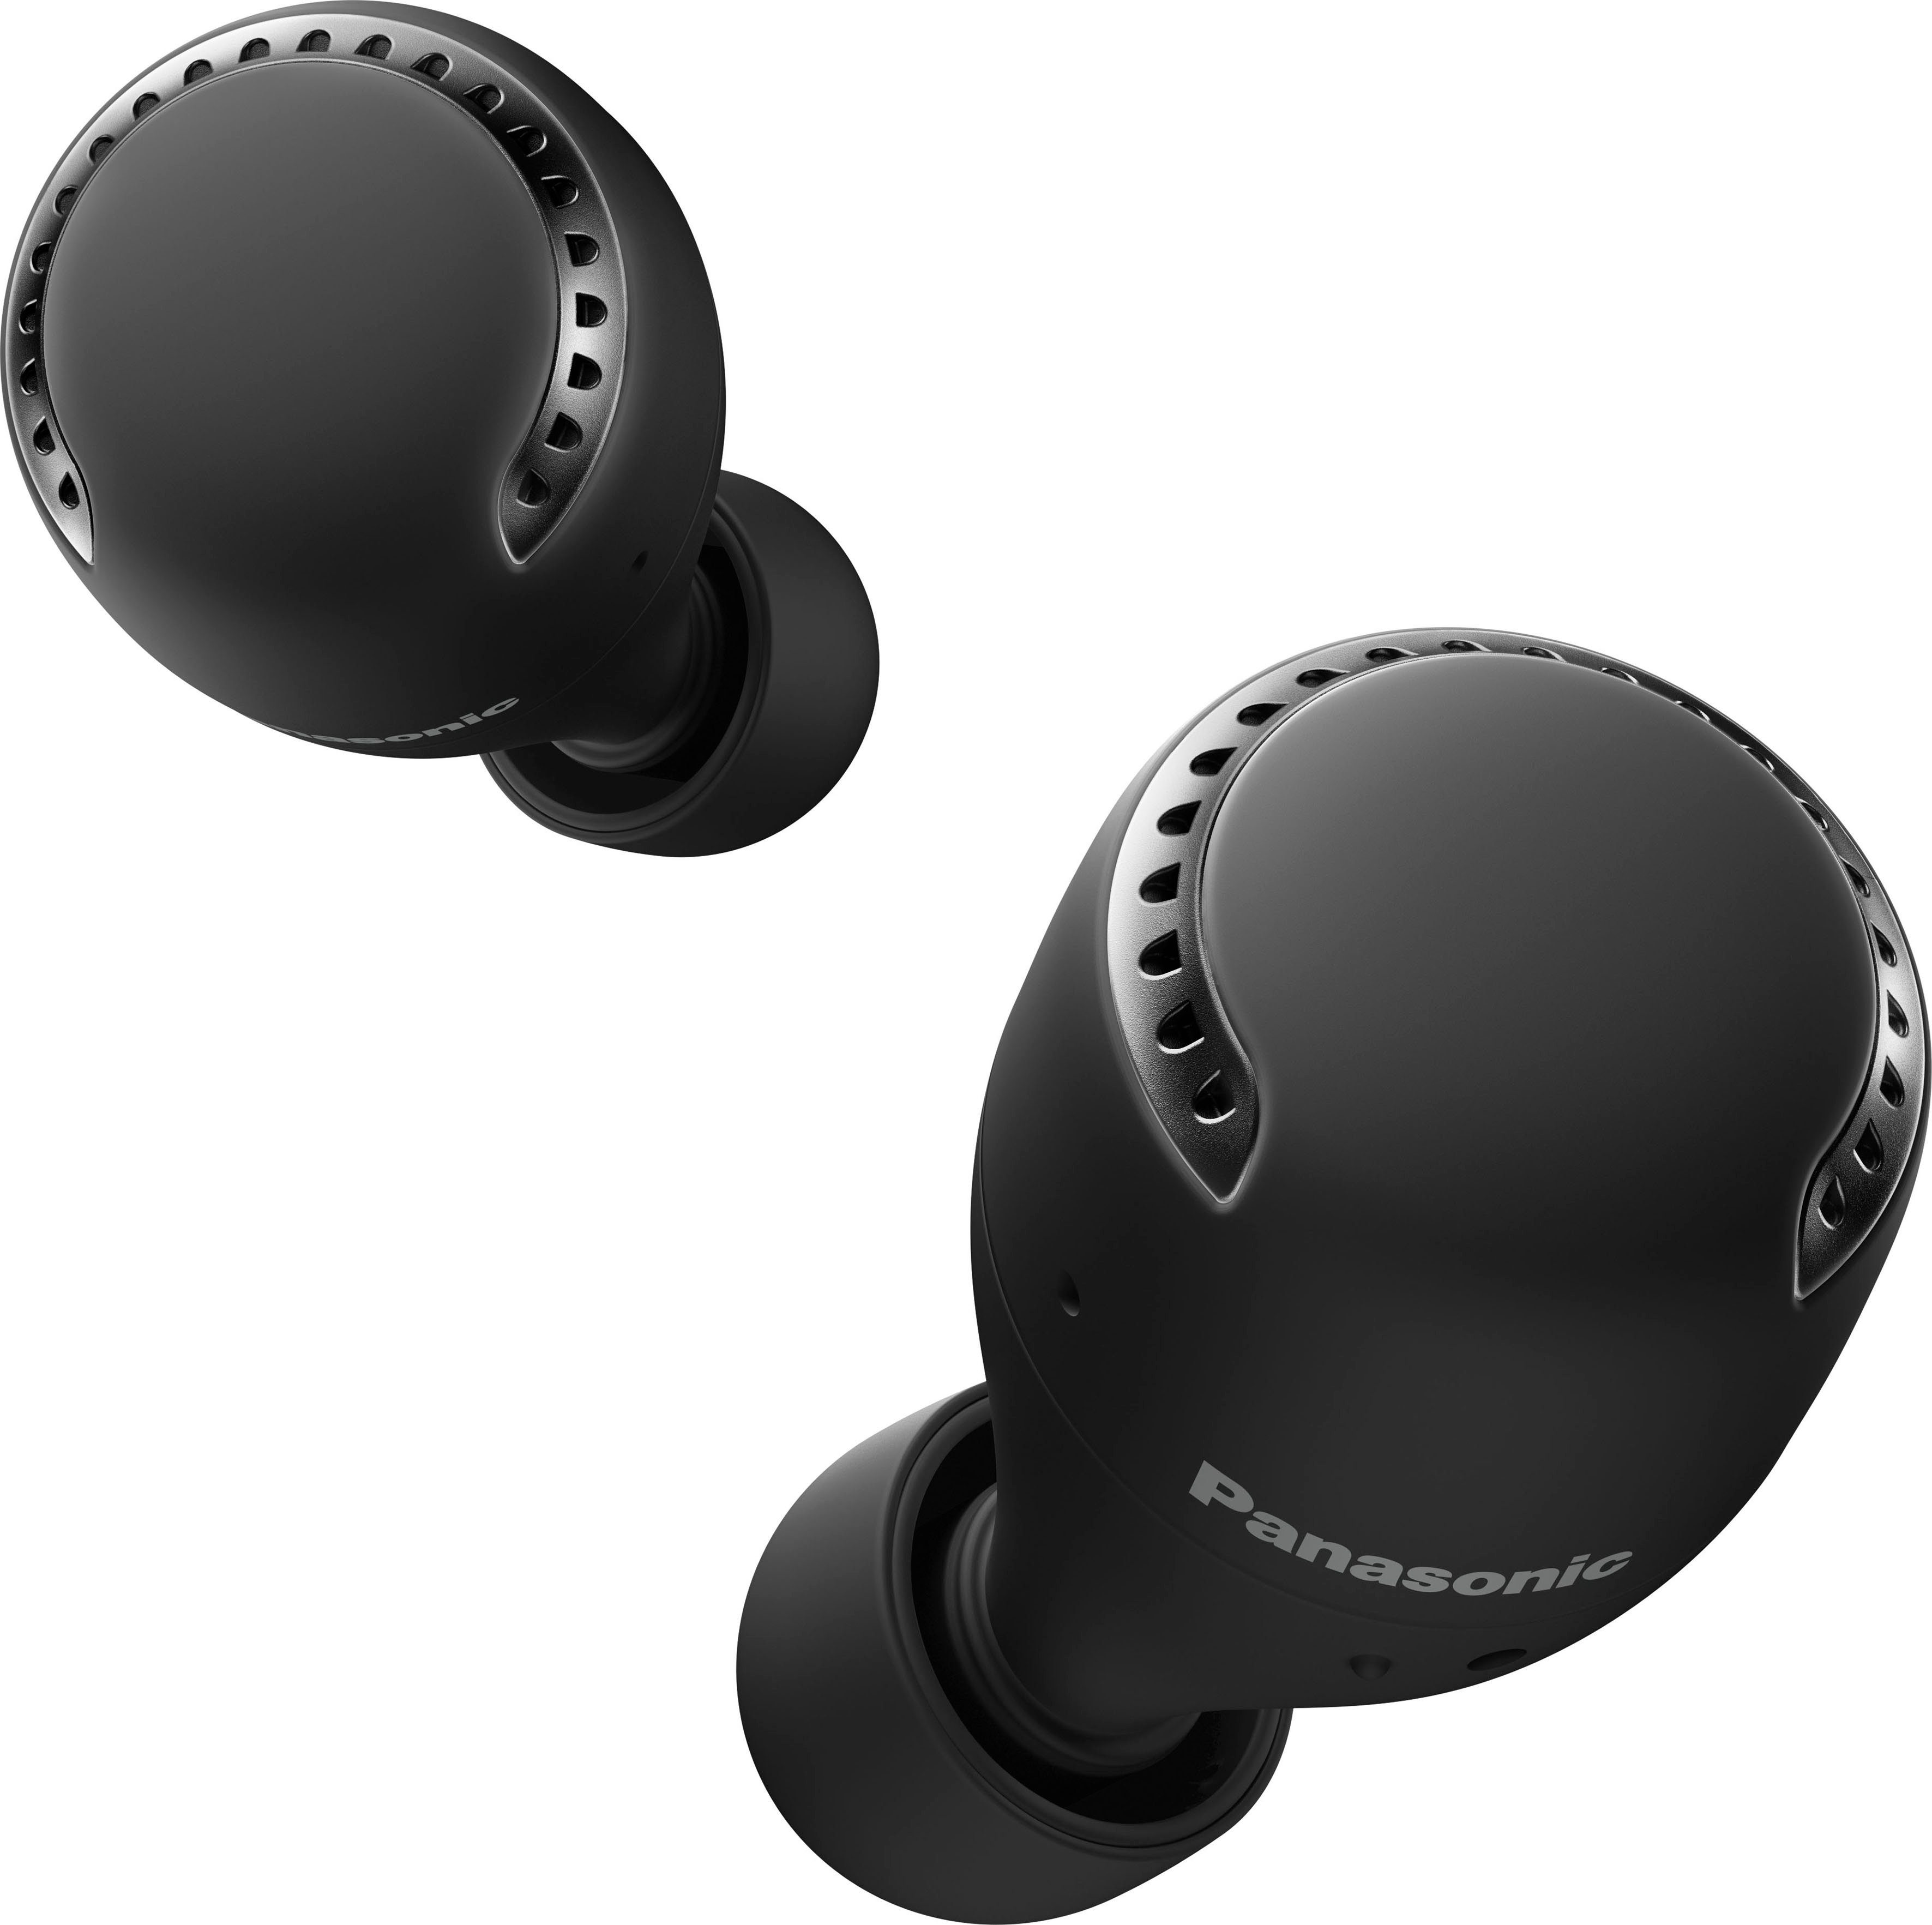 Panasonic Sprachsteuerung, RZ-S500WE wireless Wireless, True schwarz Bluetooth) In-Ear-Kopfhörer (Noise-Cancelling,